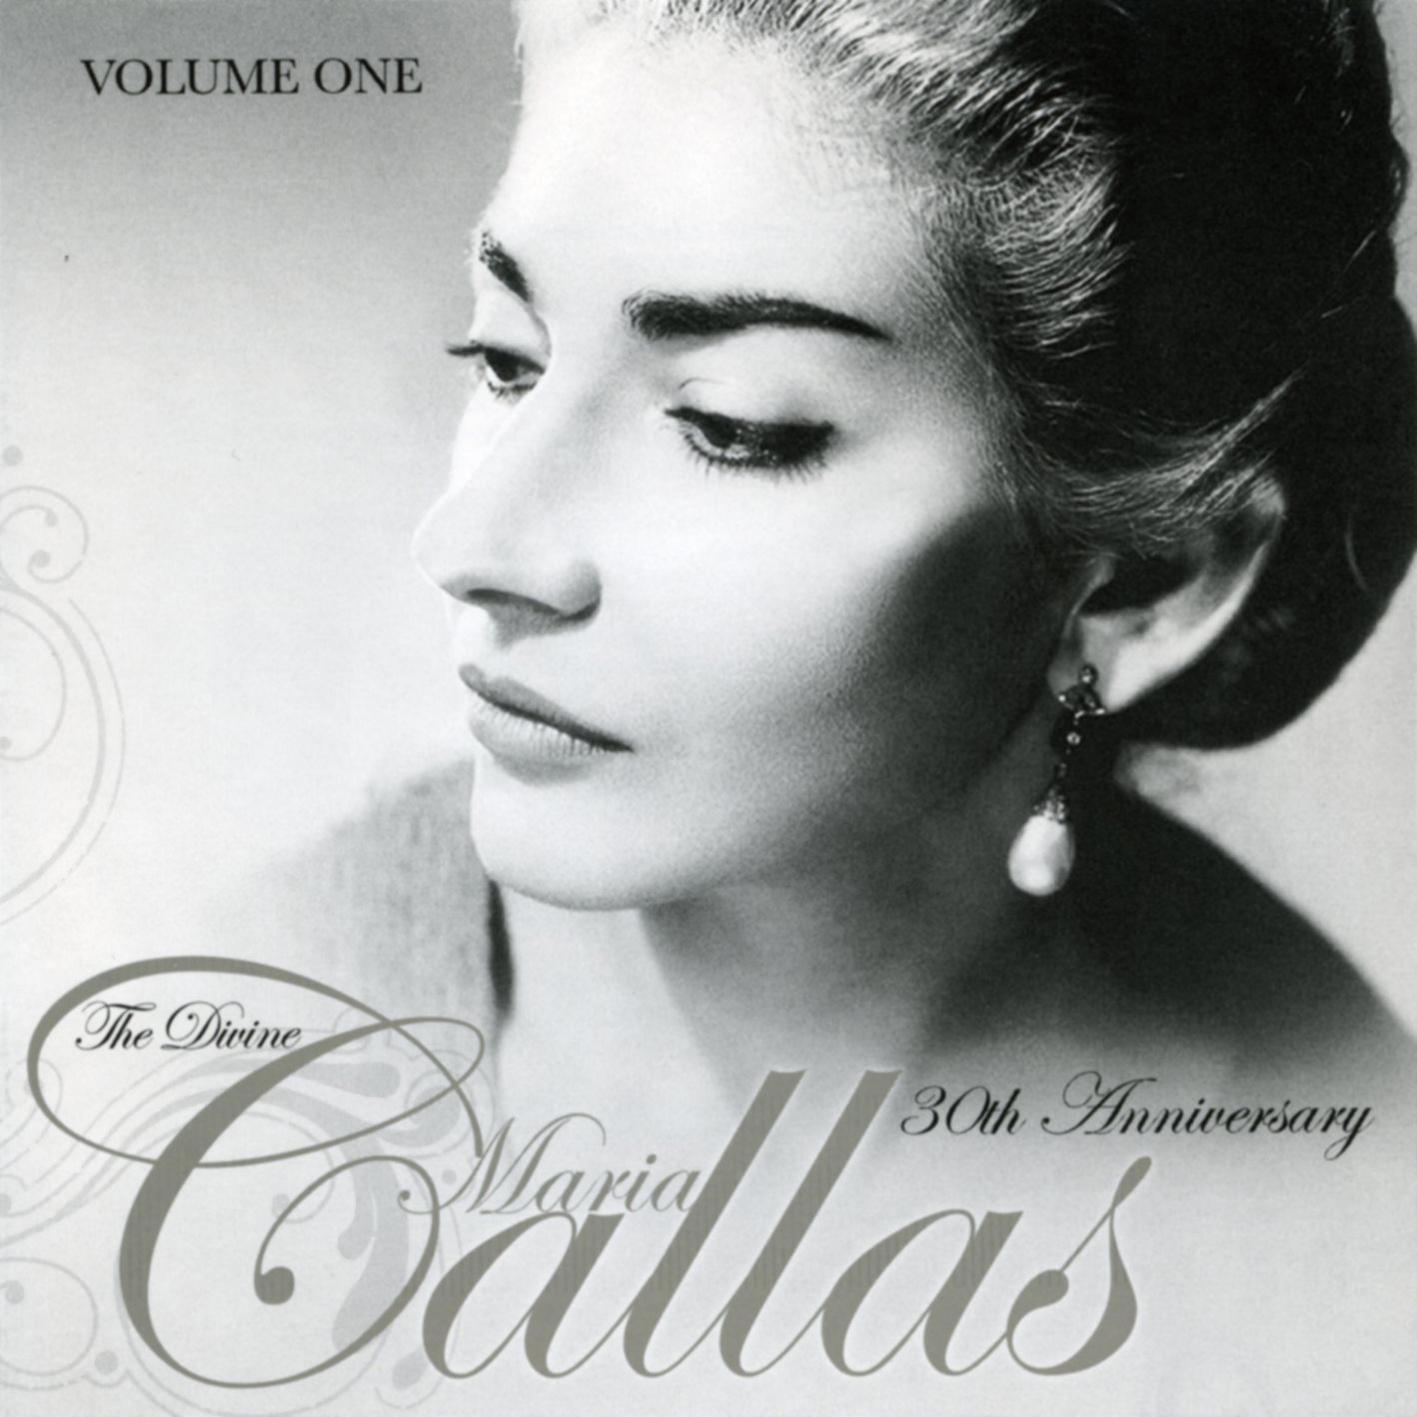 The Divine Maria Callas - Vol. One